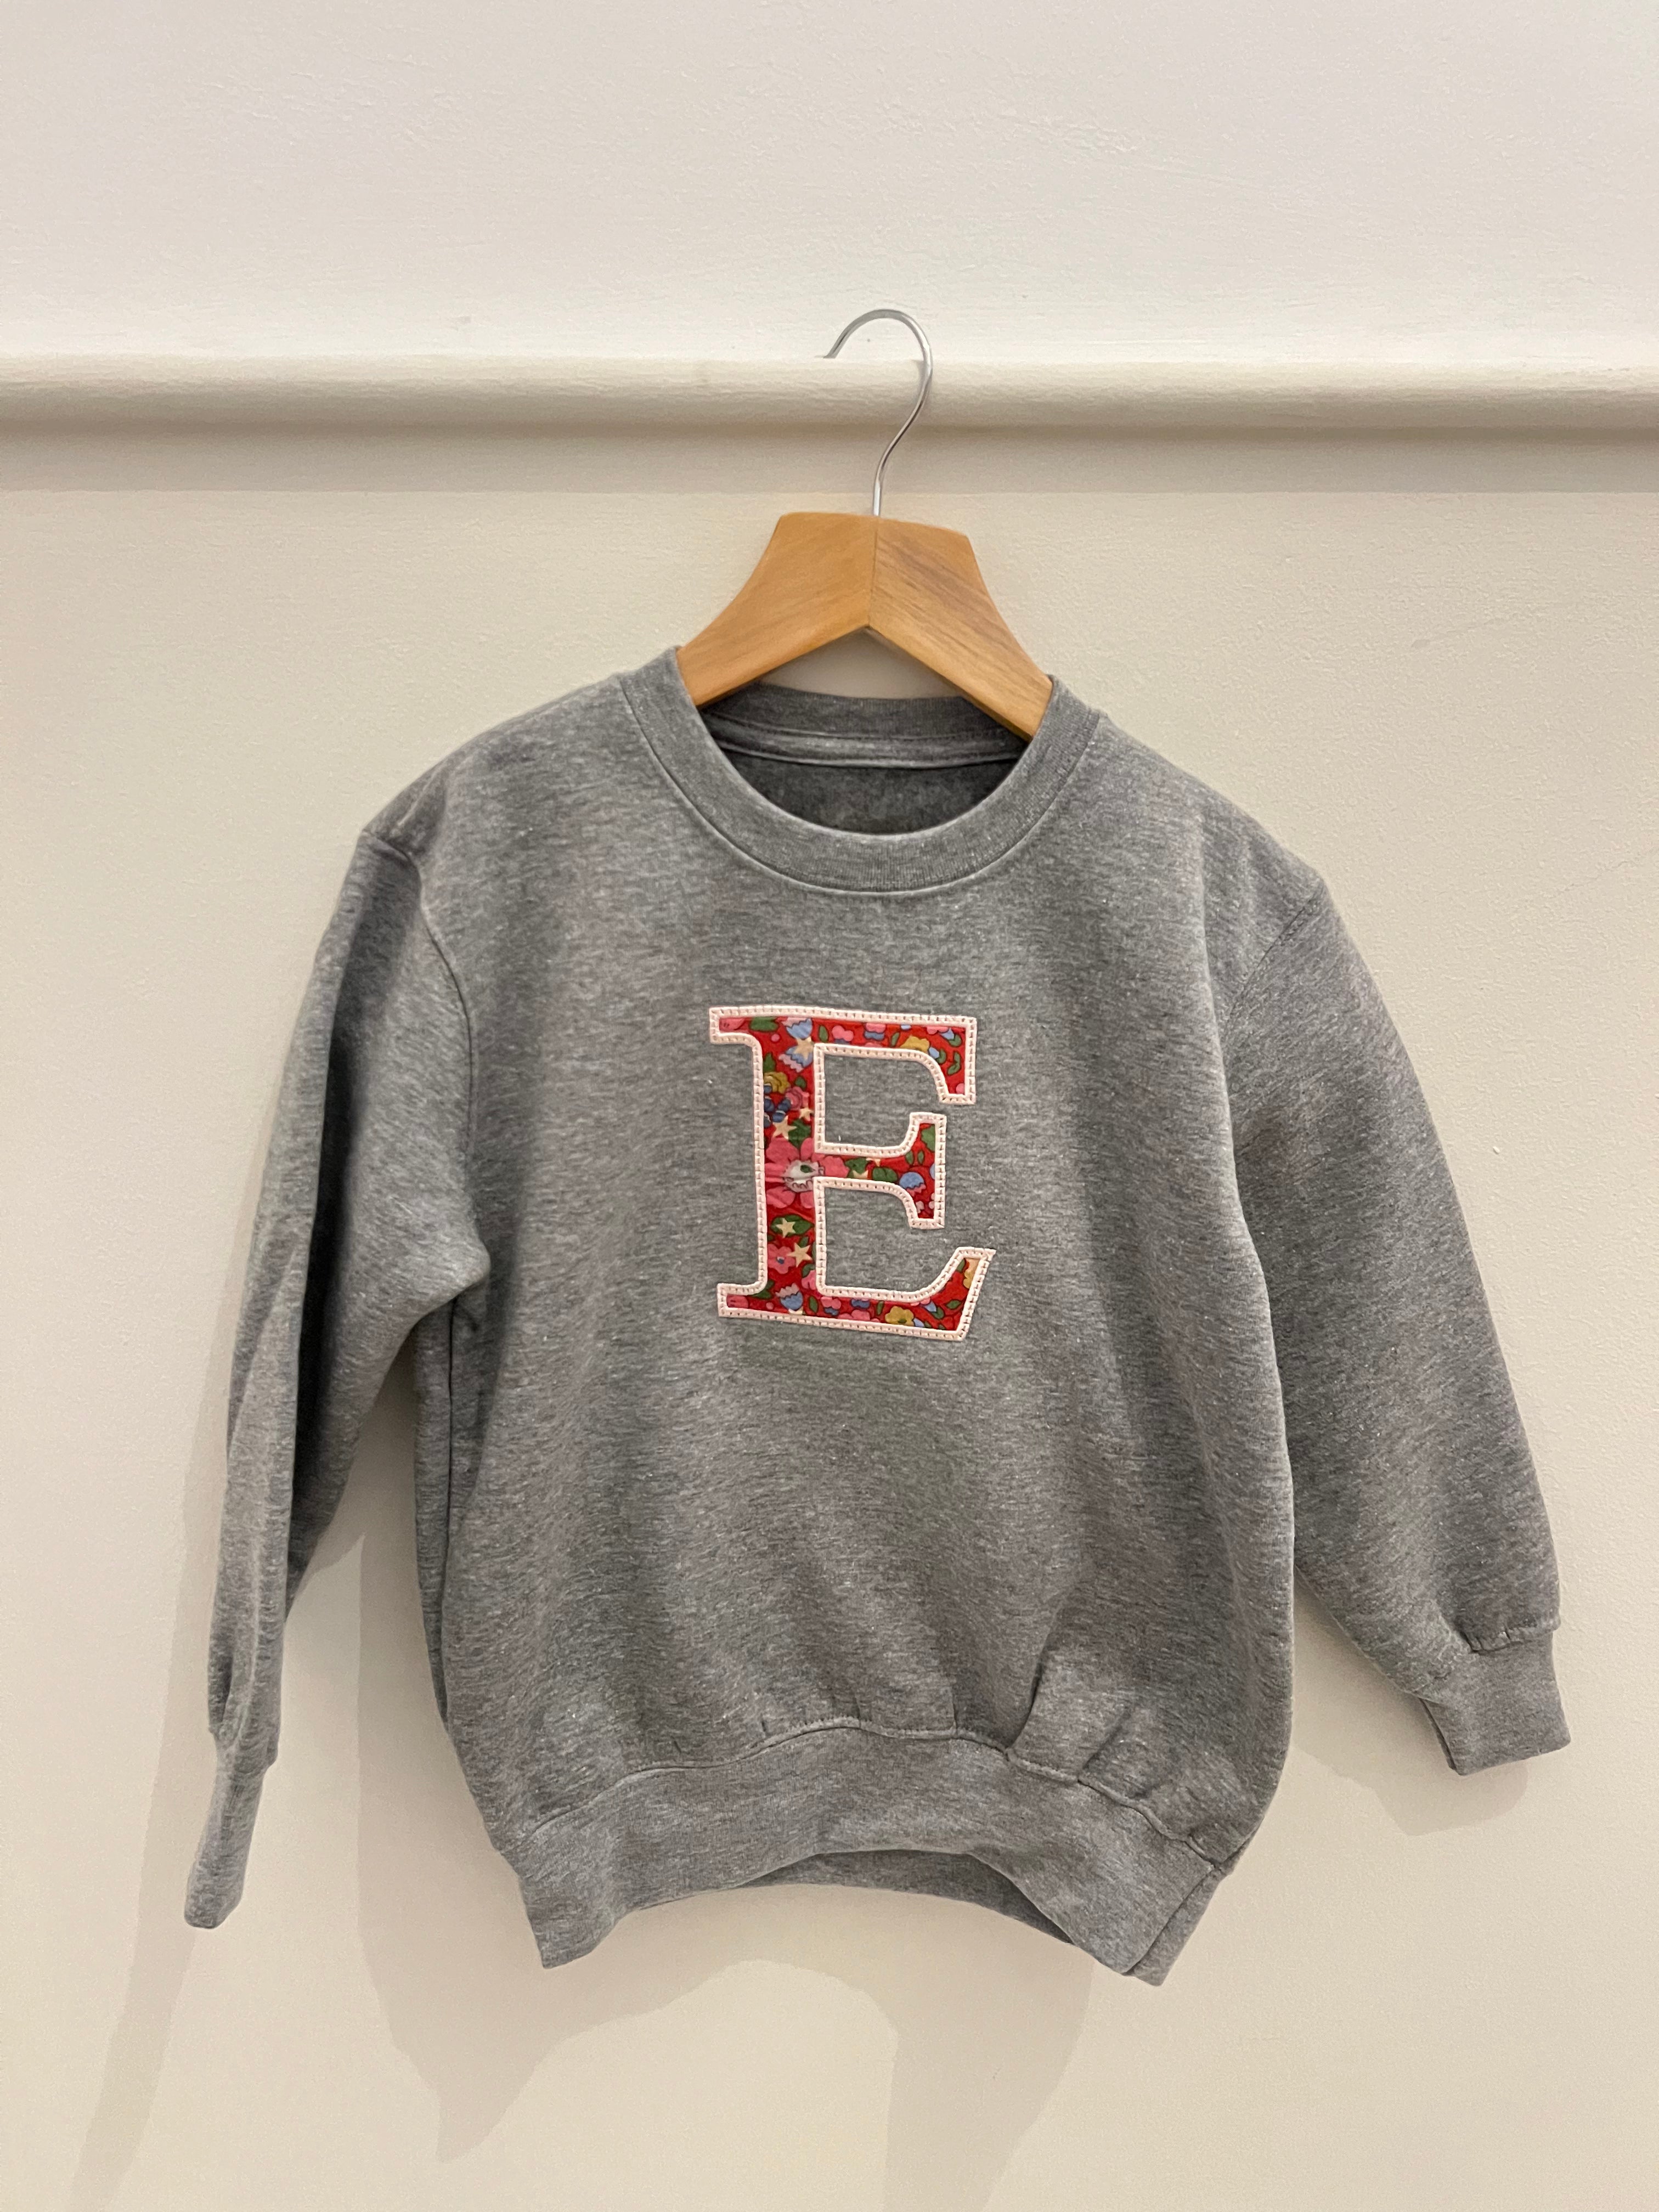 Liberty E sweater 4-5